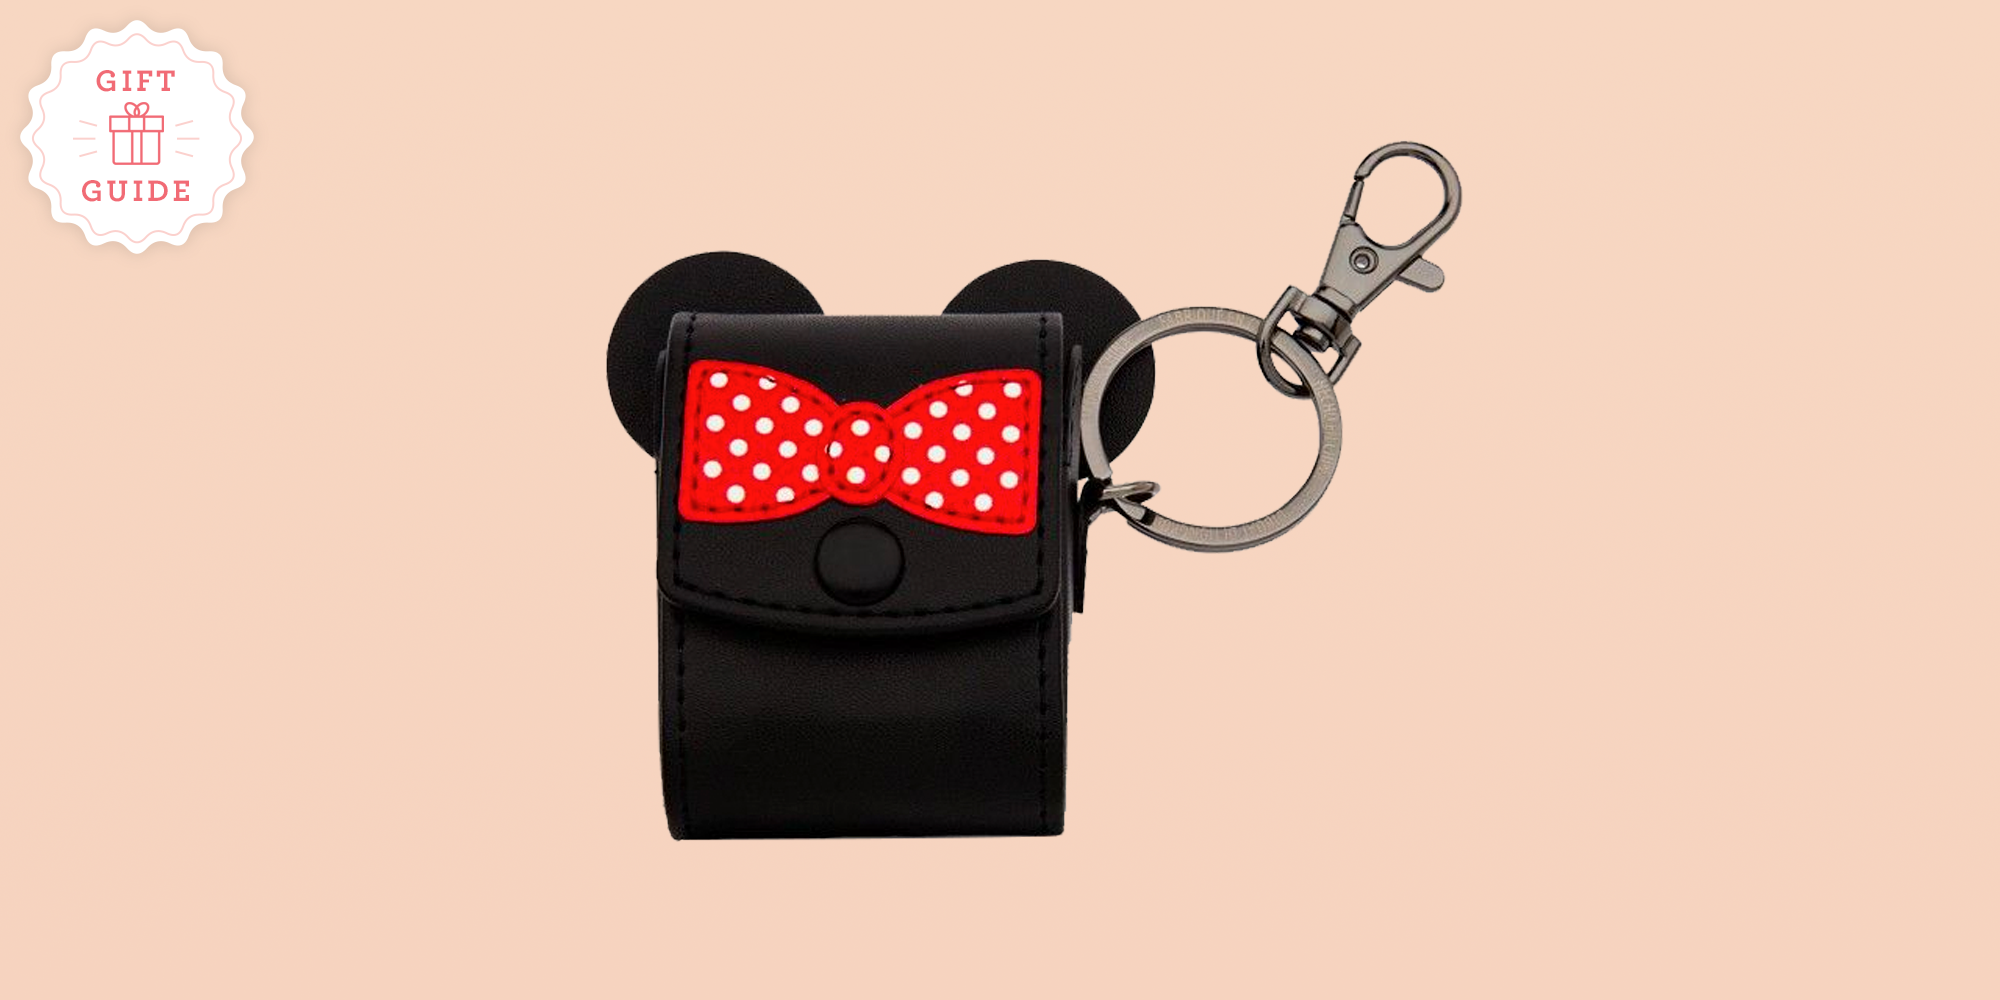 Minnie Mouse Disney pvc keychain - klassy kids